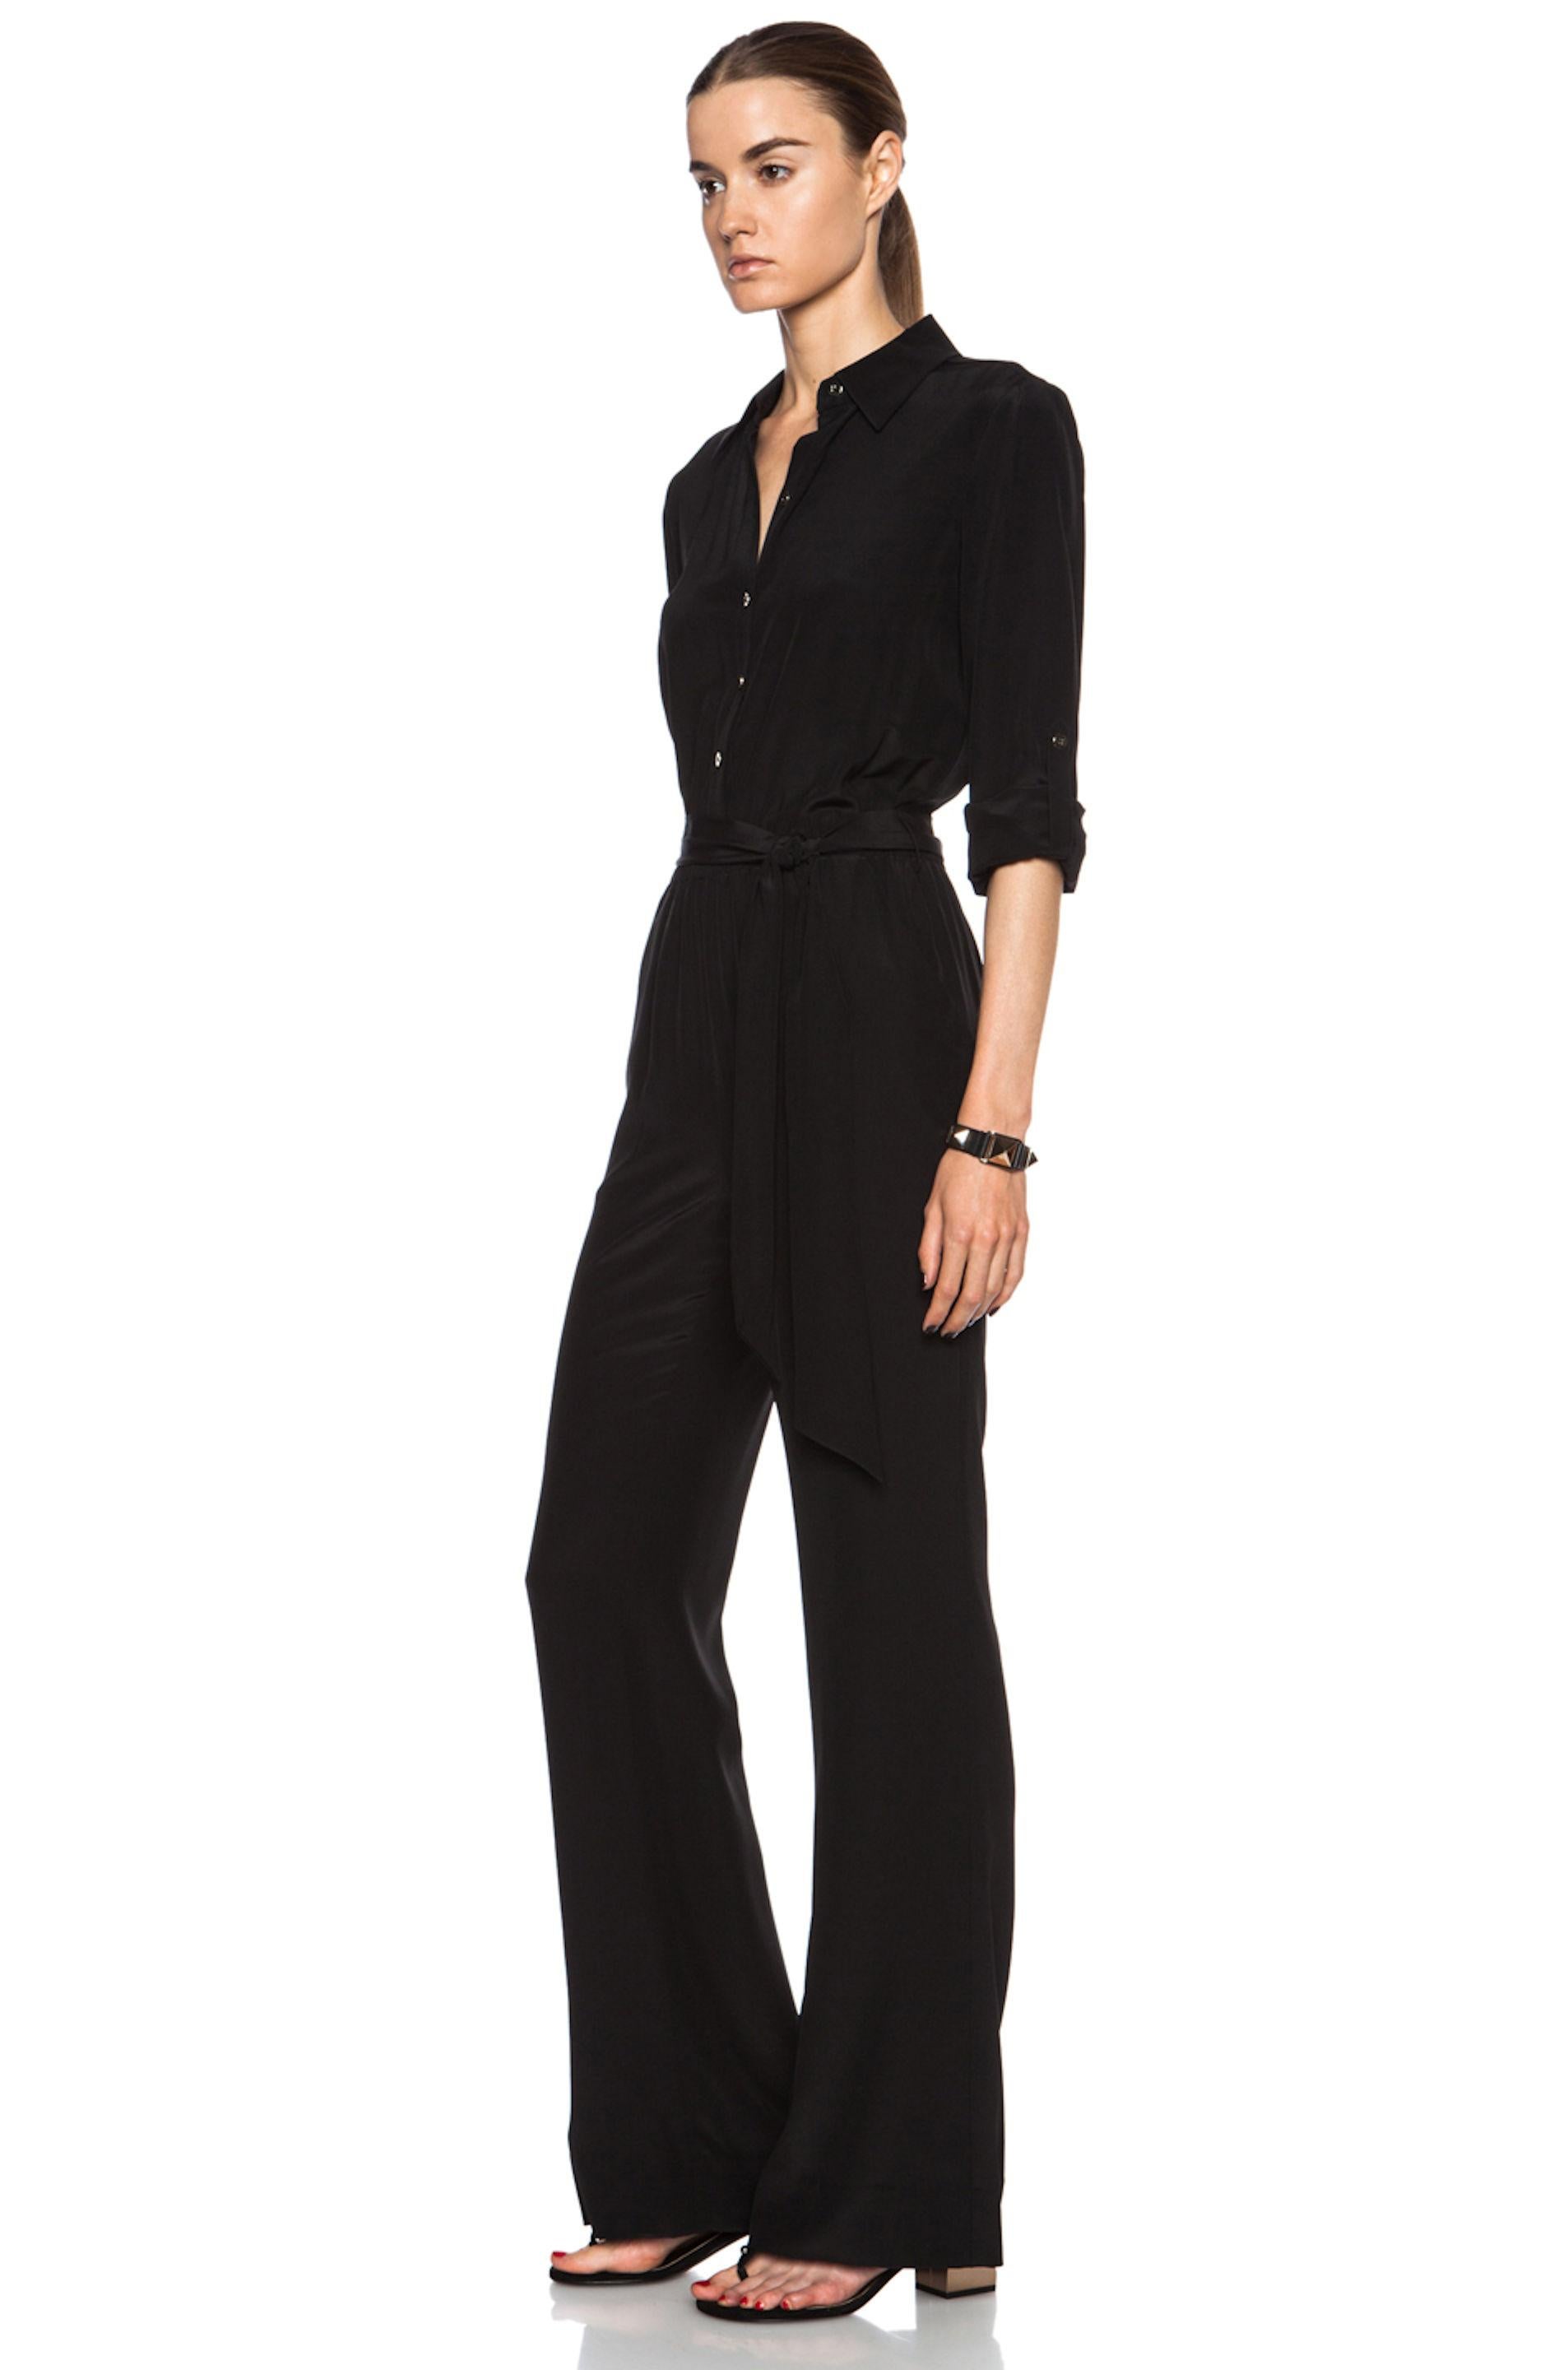 NEW DVF Diane von Furstenberg Black Silk Jumpsuit Overall Size US8 5